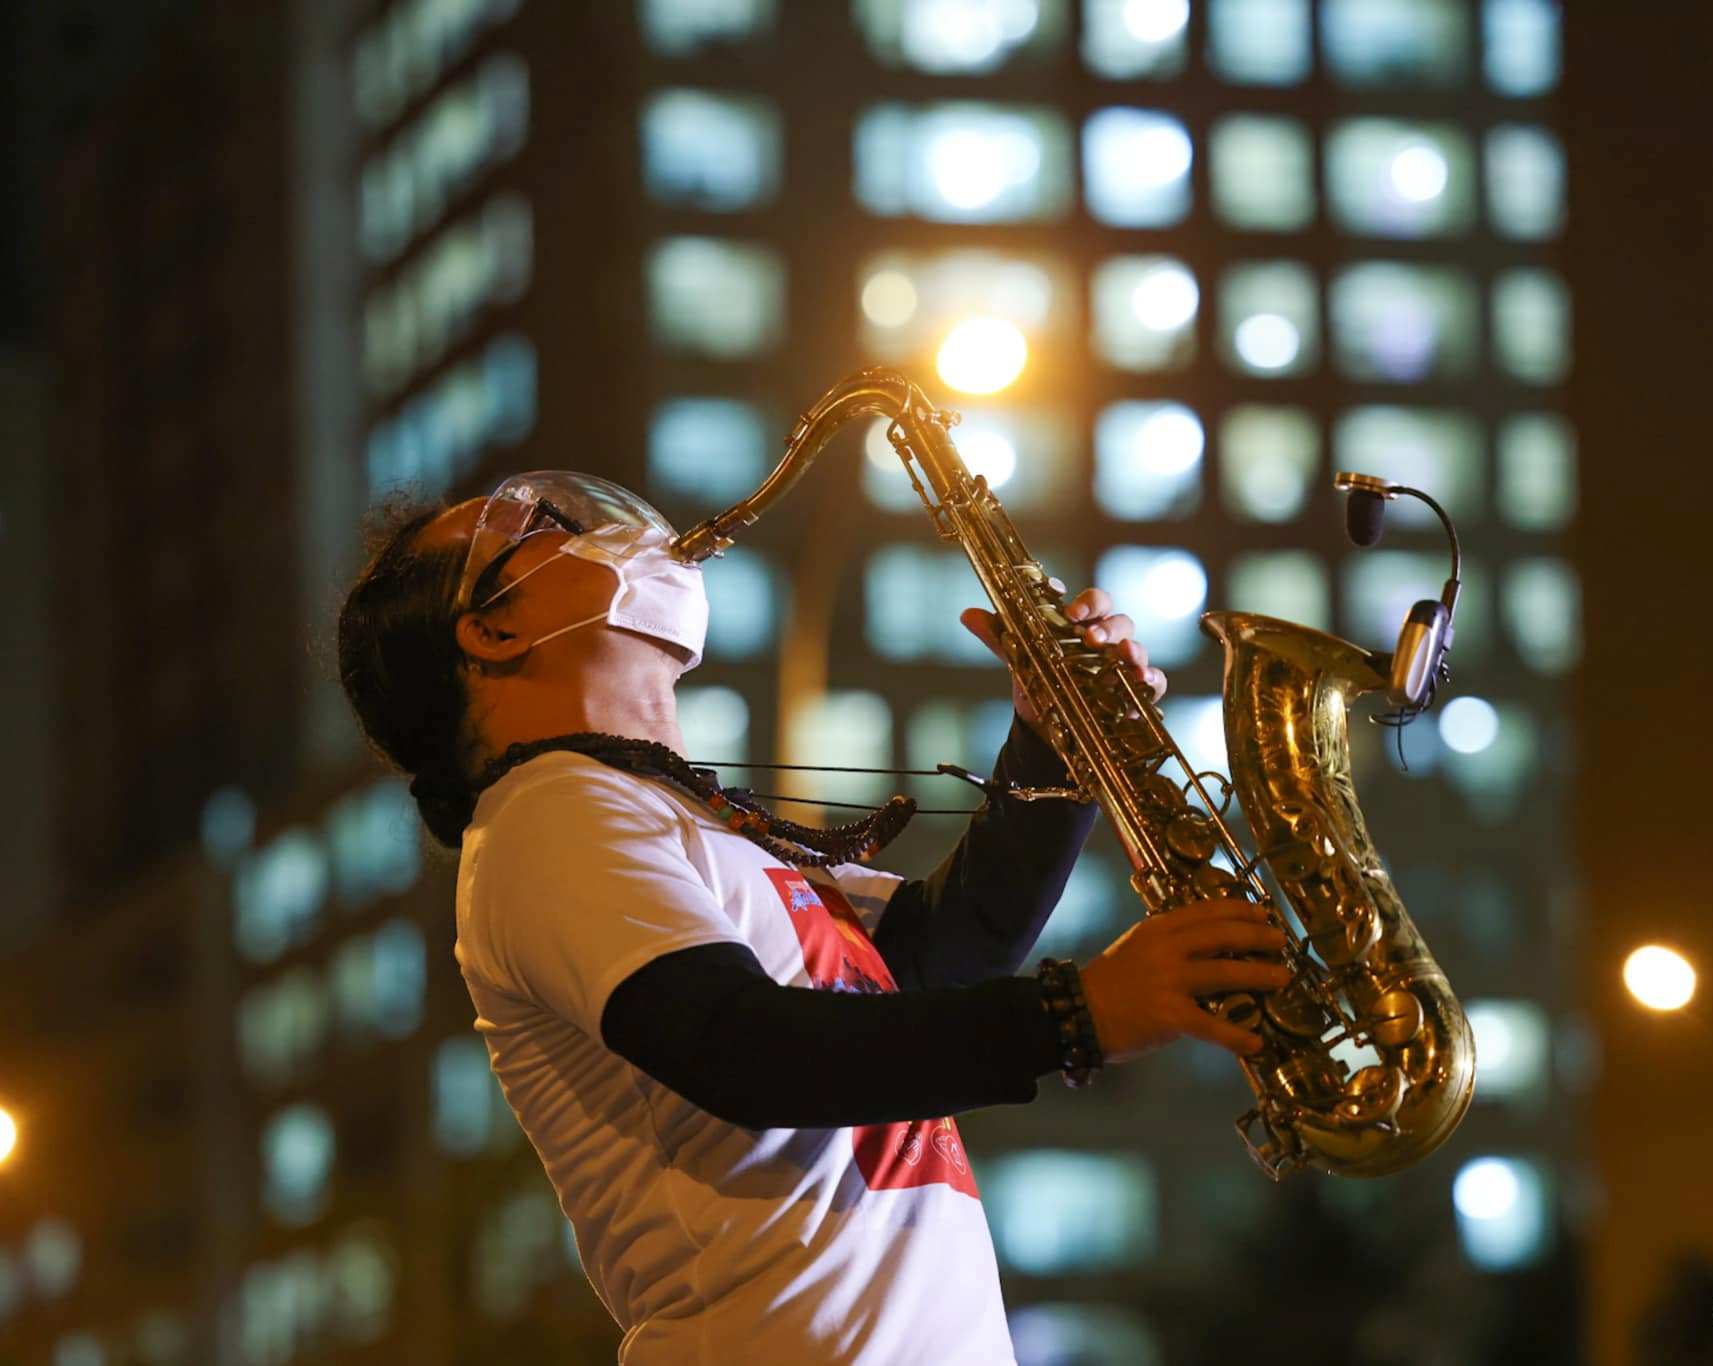 Nghệ sĩ saxophone Trần Mạnh Tuấn xuất hiện trong đêm nhạc đặc biệt